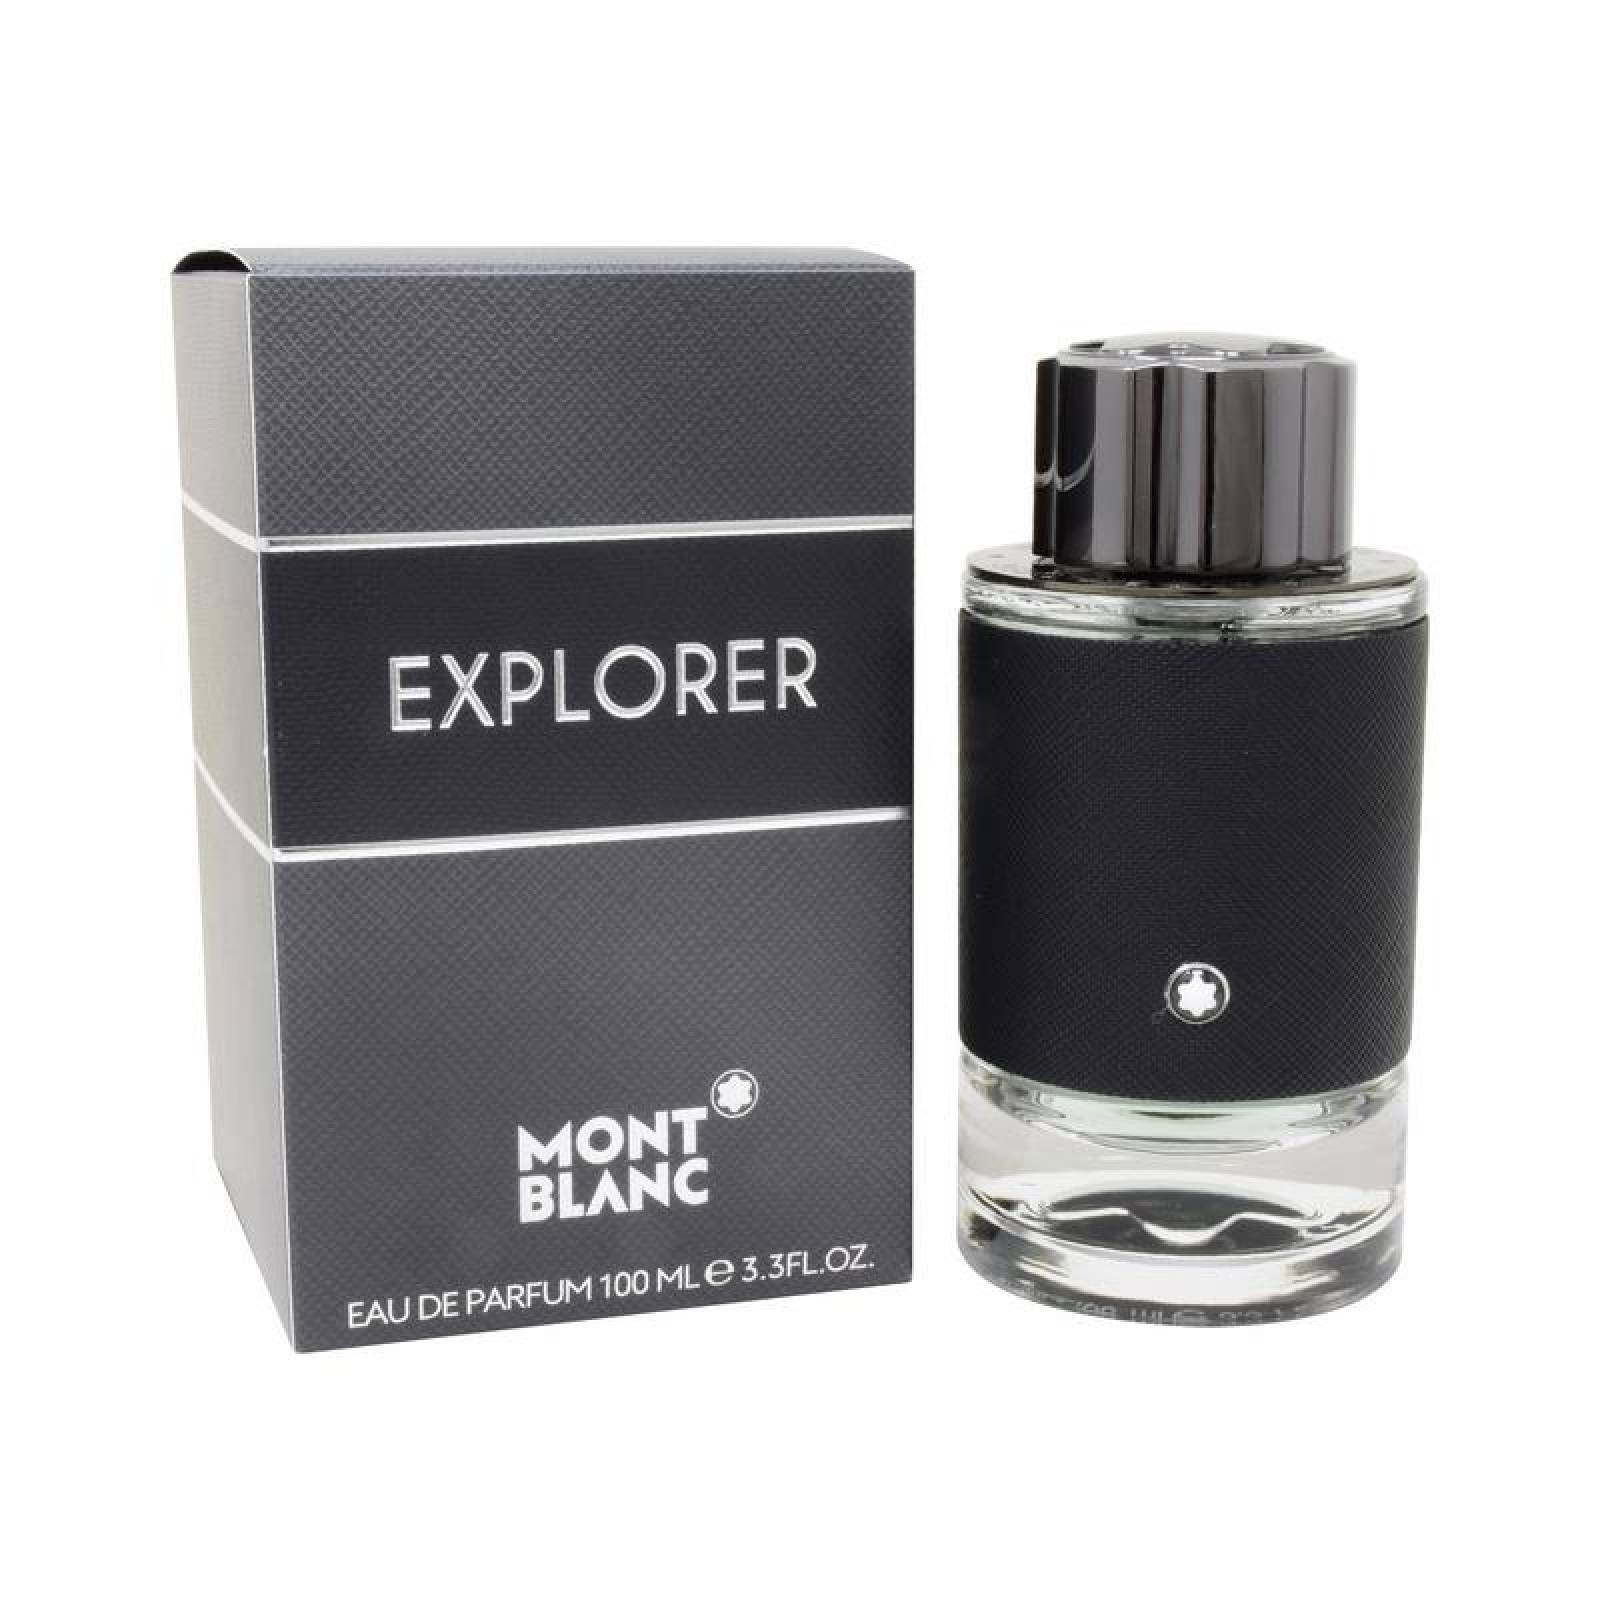 Perfume Explorer De Mont Blanc Eau De Parfum 100 ml.